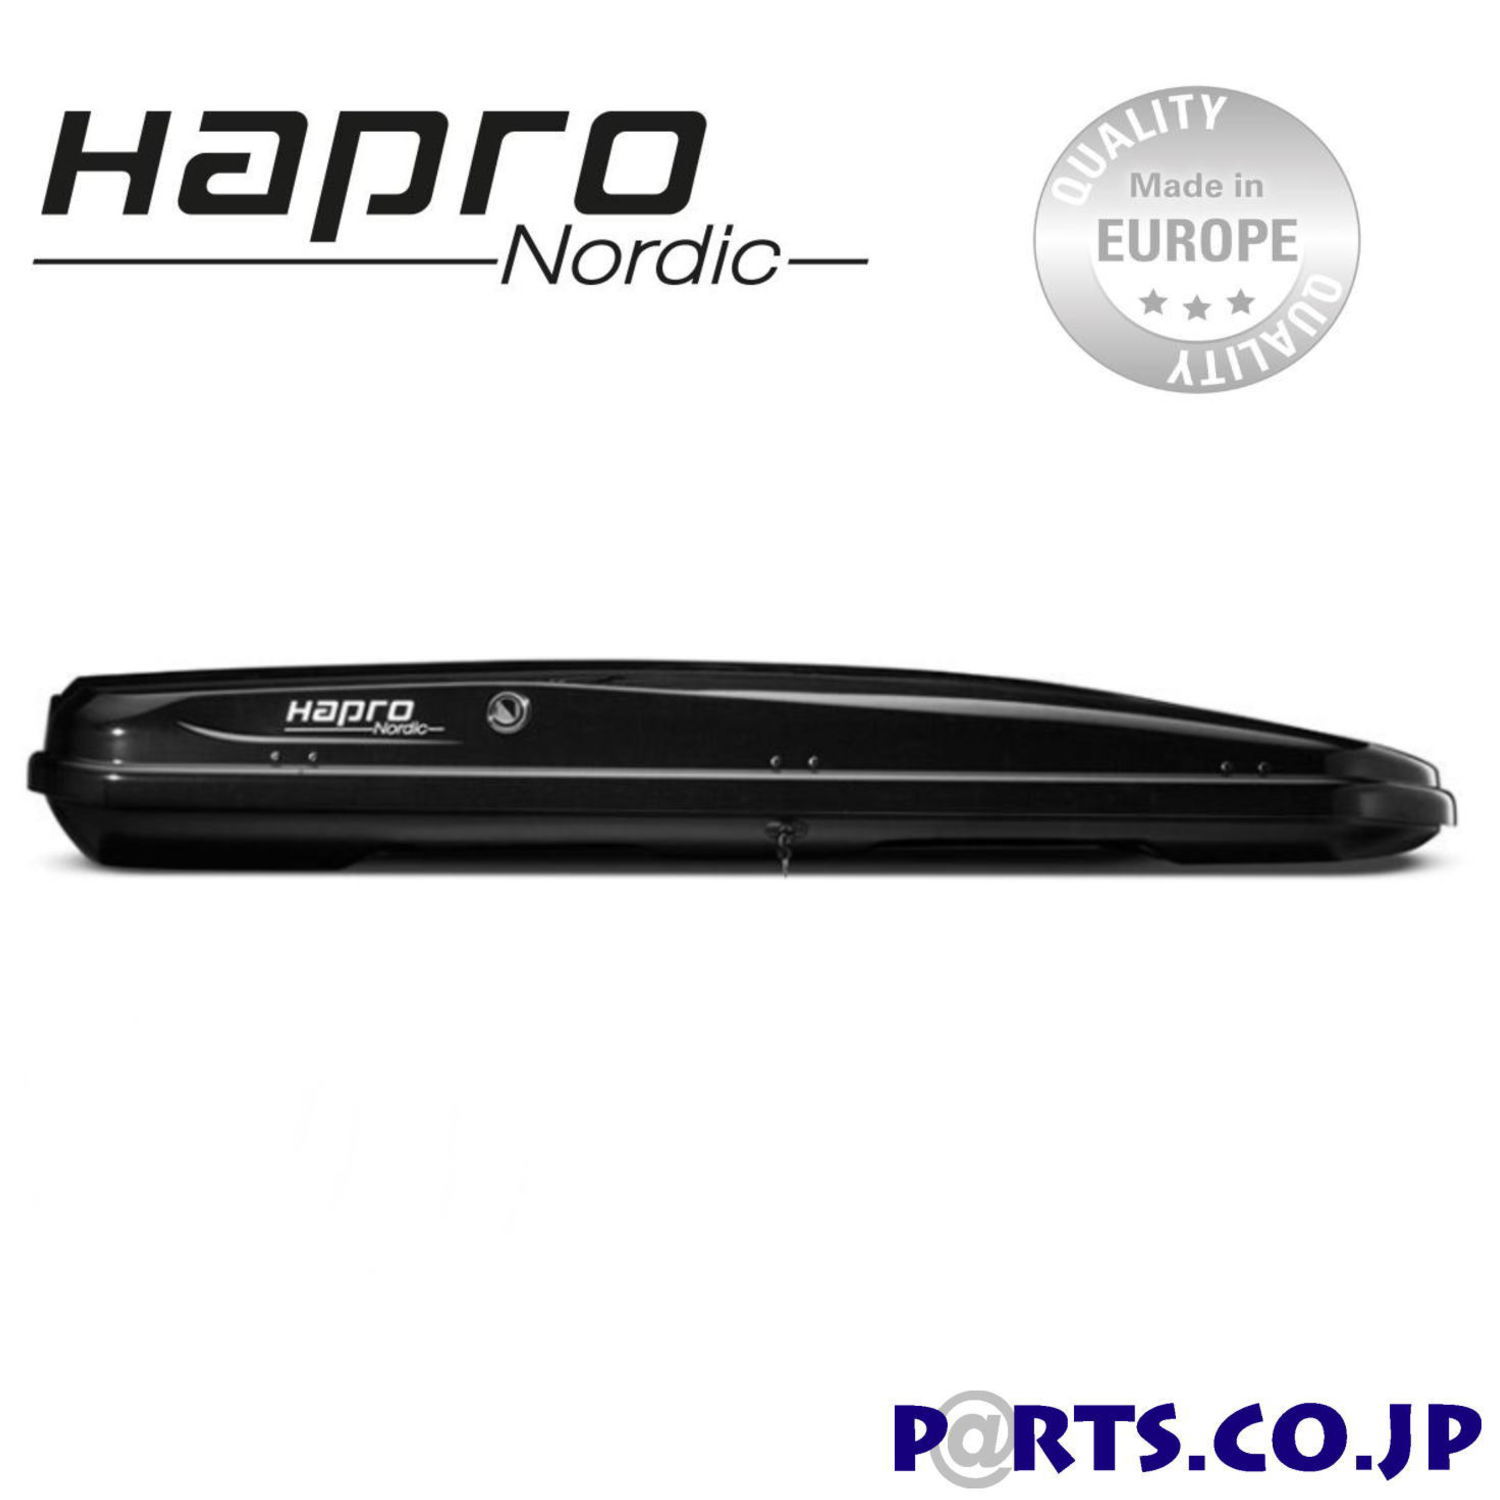 Haproは1953年にオランダで創業したサンベッドやルーフボックスを生産するオランダのメーカーです。厳格なユーロ基準で生産されておりISO11154およびTUV安全規制の認証を取得しています。Hapro Nordic（ノルディック）はスタイリッシュでエレガントなデザインで十分なスペースを提供します。スリムでコンパクトに洗練されたデザイン、大きくて広々とした内部スペース、細身の空気力学的なデザインと使いやすさを兼ね備えています。Hapro Nordicは、週末や長期休暇にかかわらず、旅行の快適さへの貴重な投資です。このモデルはスキー搭載にも優れています。最大長2.2mのスキーを8組または9組容易に搭載できます。・容量460L ・サイズ（外寸）226x94x32cm ・サイズ（内寸）221x89x31cm ・重量22.5Kg ・最大積載荷重75Kg ・積載目安スキー約8〜9組 ・5年間保証付き・取り付け可能ルーフバーサイズ ●エアロタイプ 幅：最大95mm 高さ：最小18mm〜最大38mm ●スクエアタイプ 幅：最大95mm 高さ：最小18mm〜最大28mm※大型商品の為、西濃運輸での配送となります。ご自宅への配送をご希望される方はご注文前にメールまたは電話にてお問い合わせください。北海道、沖縄、離島などへの配送は別途送料がかかる場合がございます。誠に恐れ入りますが、何卒ご理解のほど、よろしくお願い申上げます。ユニバーサル